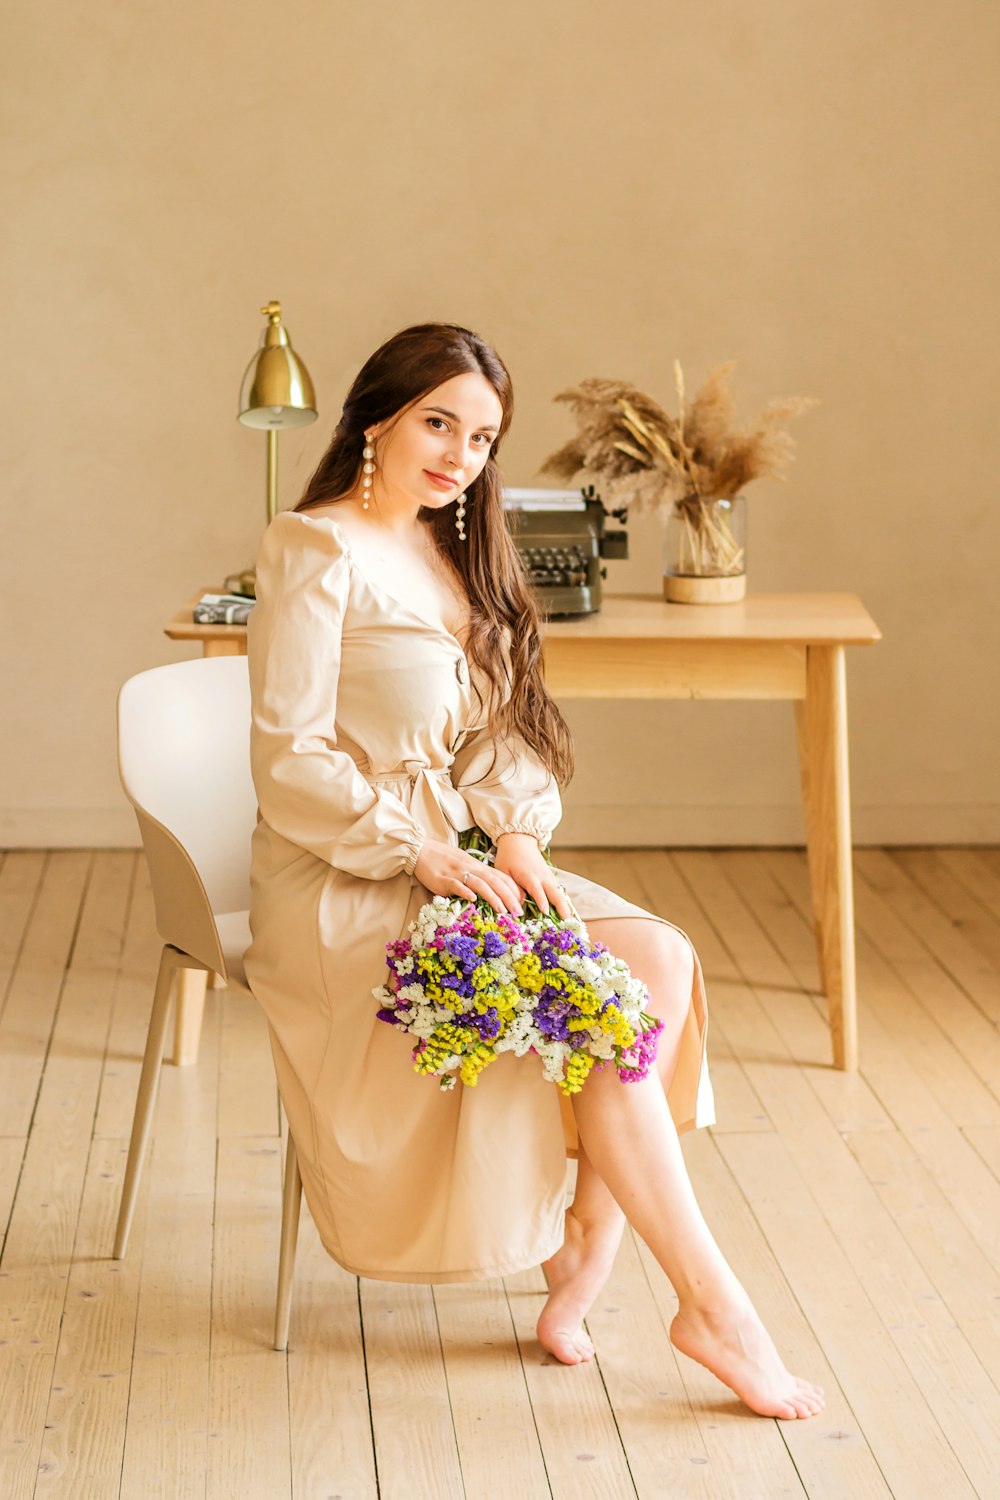 Mujer descalza con vestido blanco de manga larga sentada en una silla cerca de una mesa rectangular de madera beige